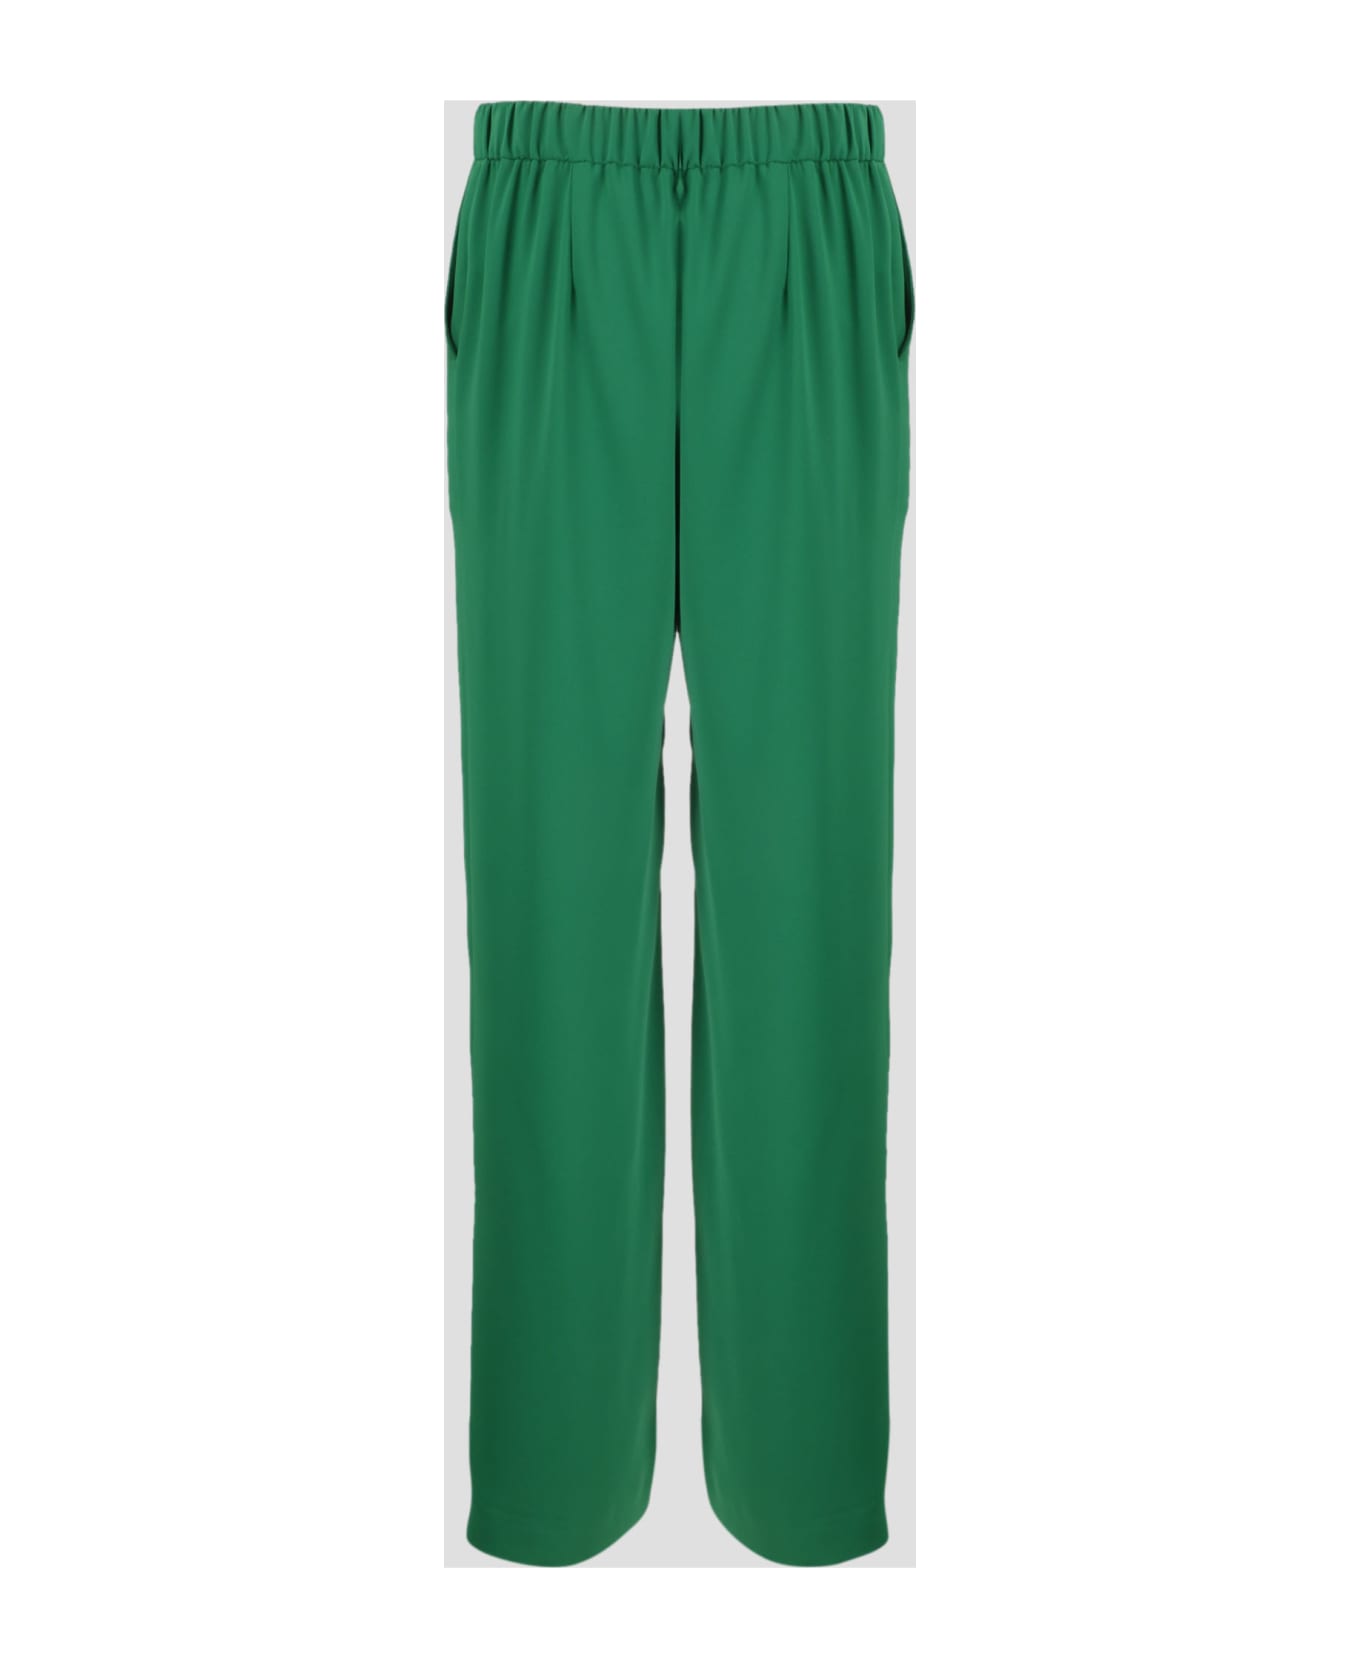 Parosh Panty Wide Leg Trousers - Green ボトムス